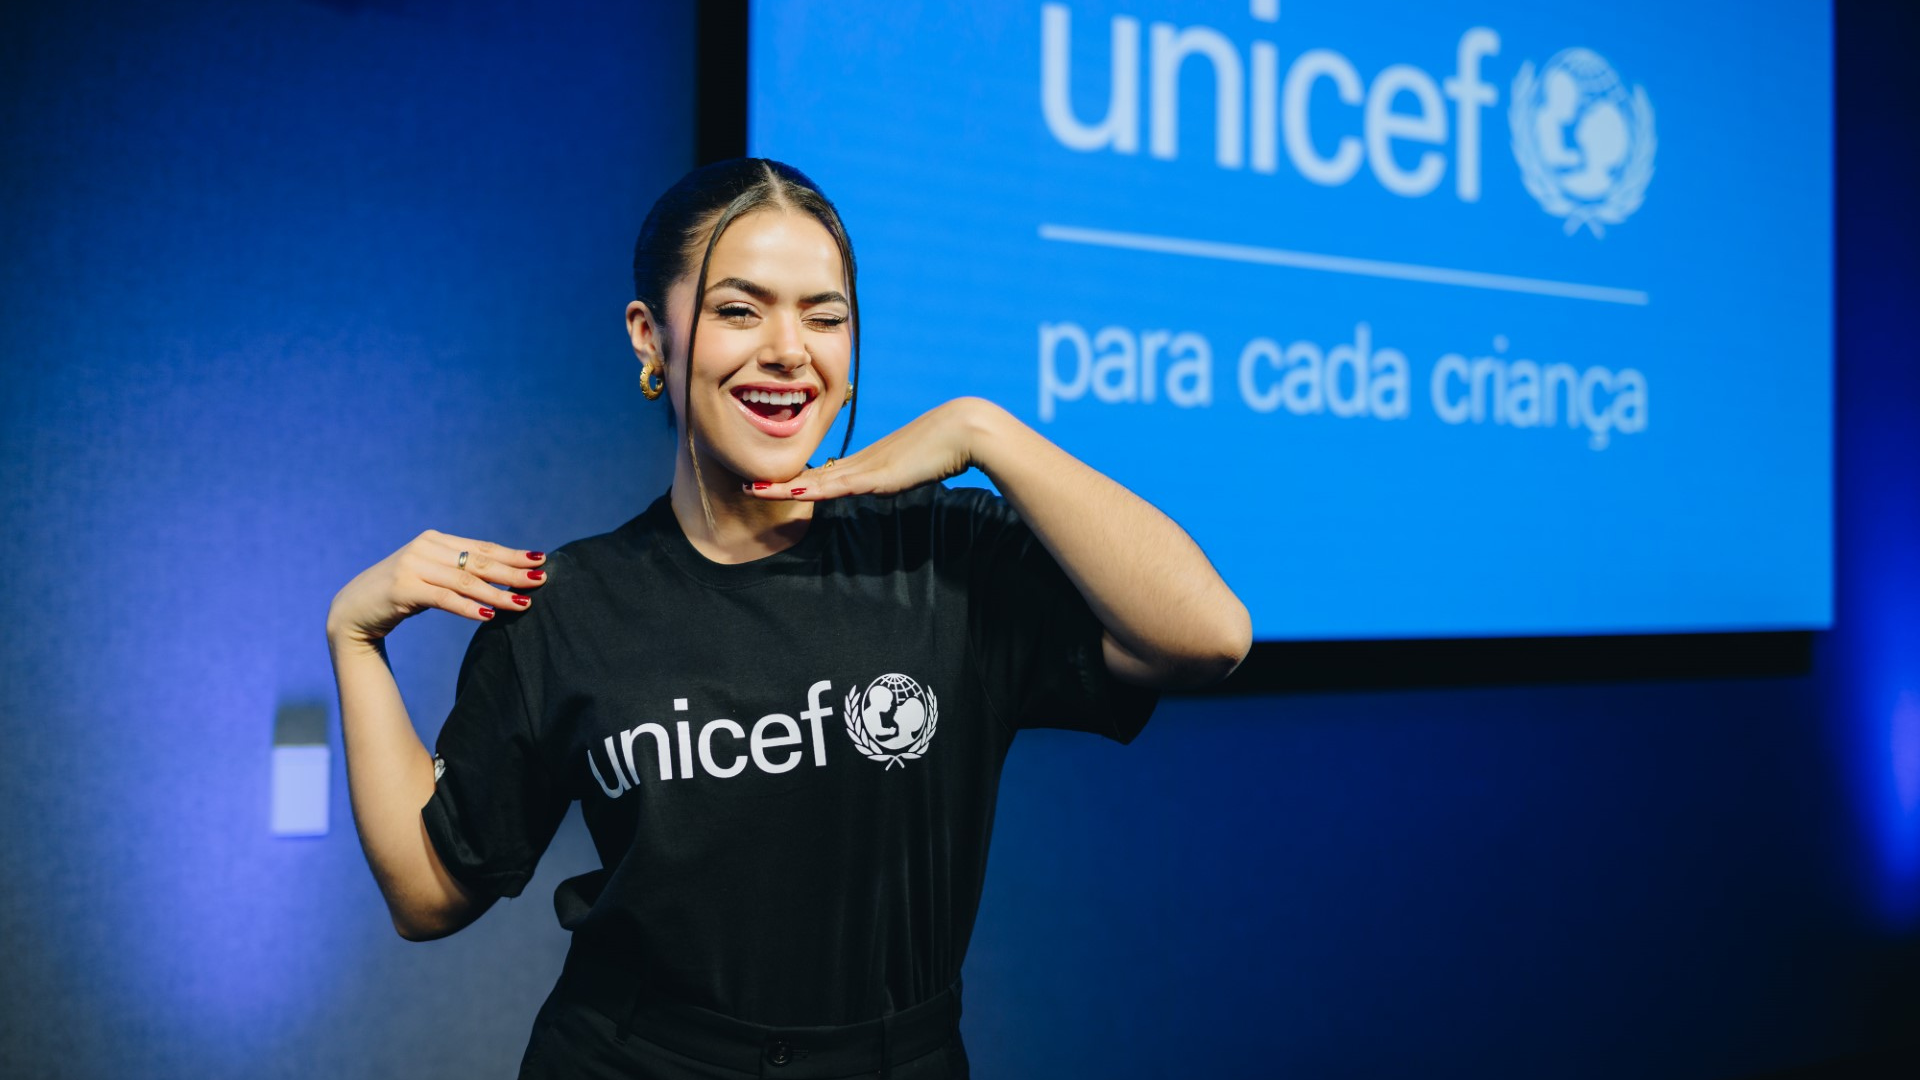 UNICEF anuncia Maisa como nova embaixadora